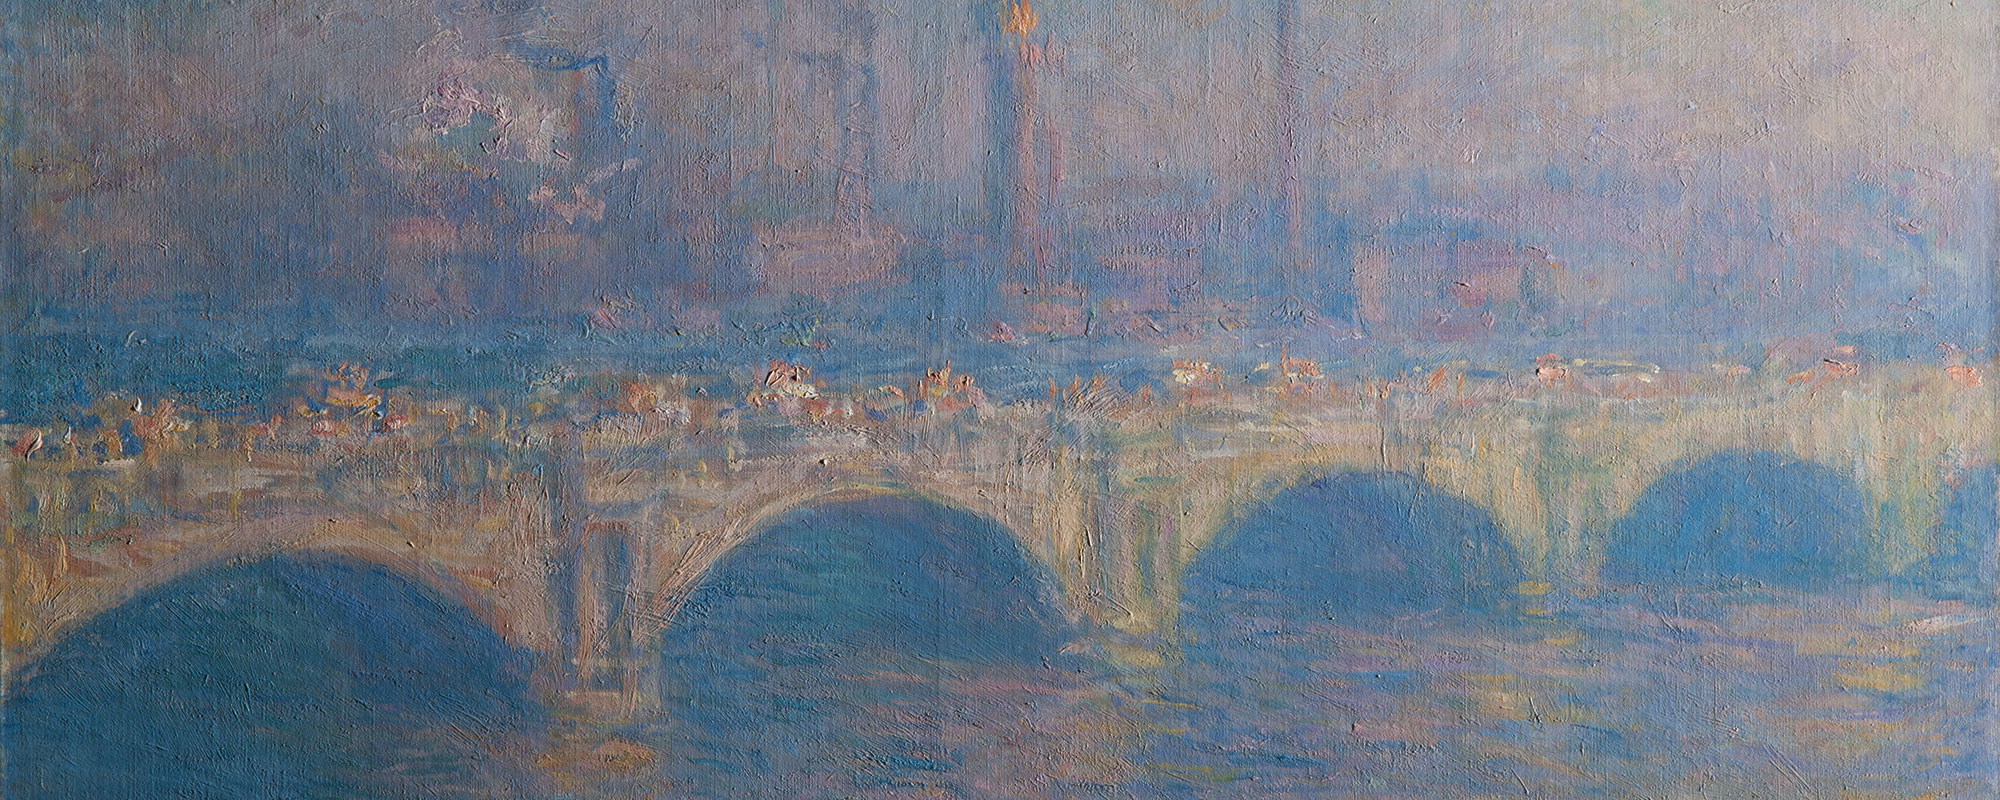 A detail of Monet's waterloo bridge painting